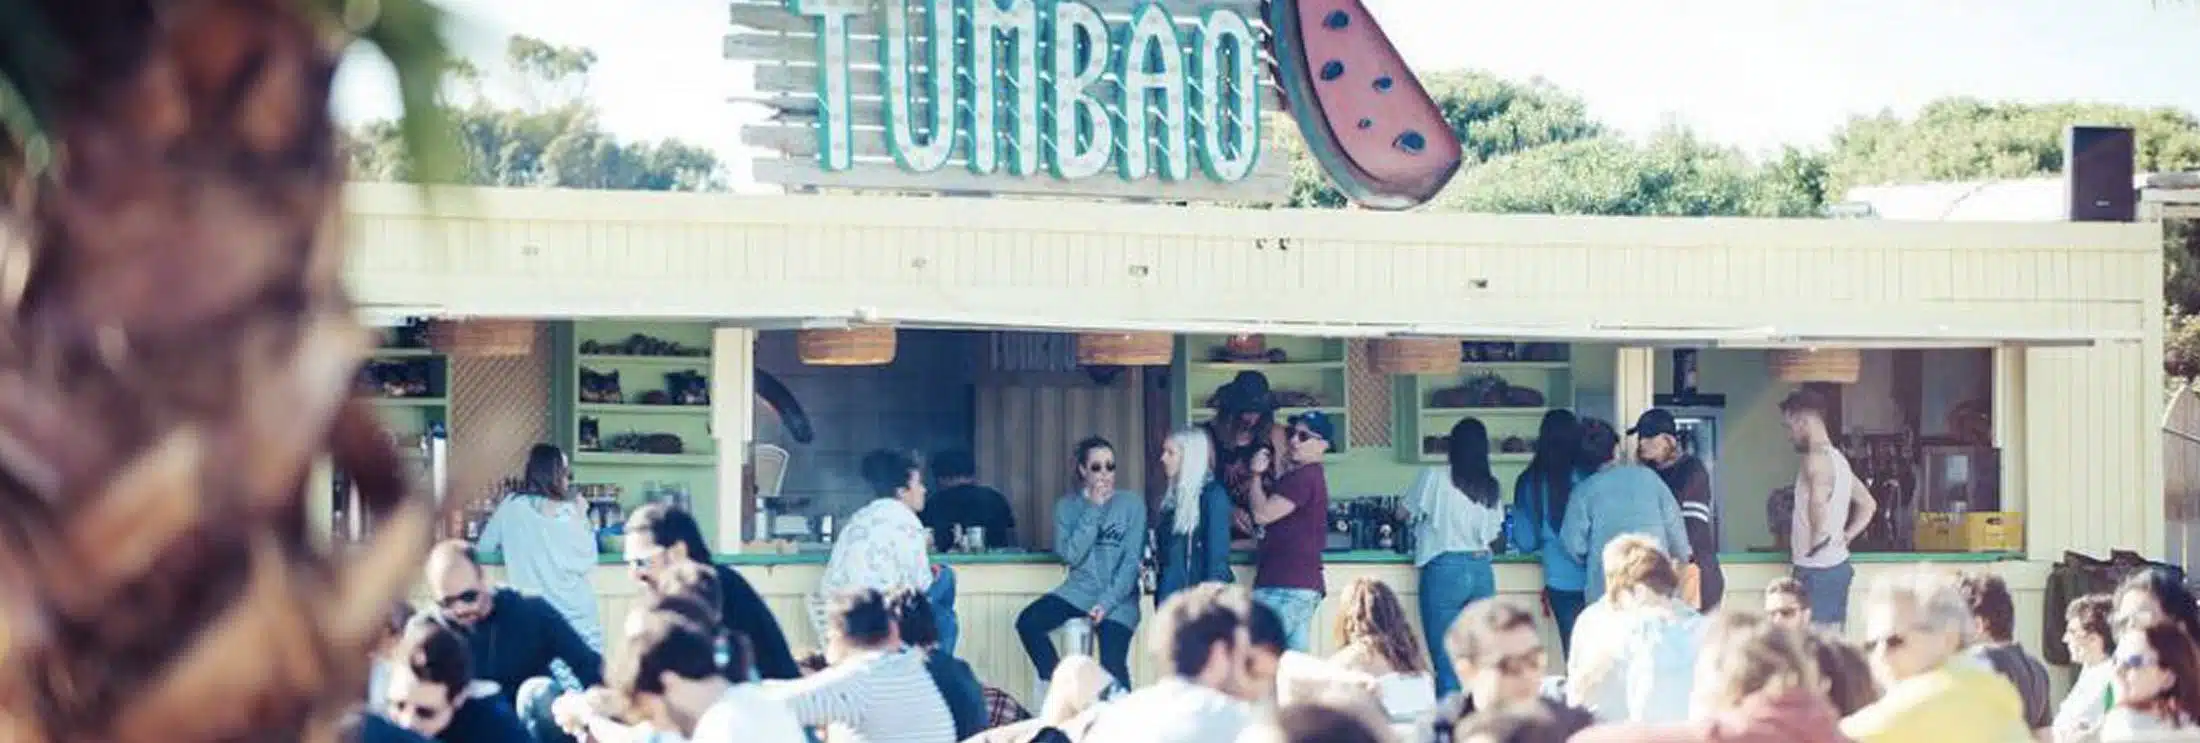 El Tumbao es el chiringuito donde hacer la fiesta en verano desde junio a septiembre